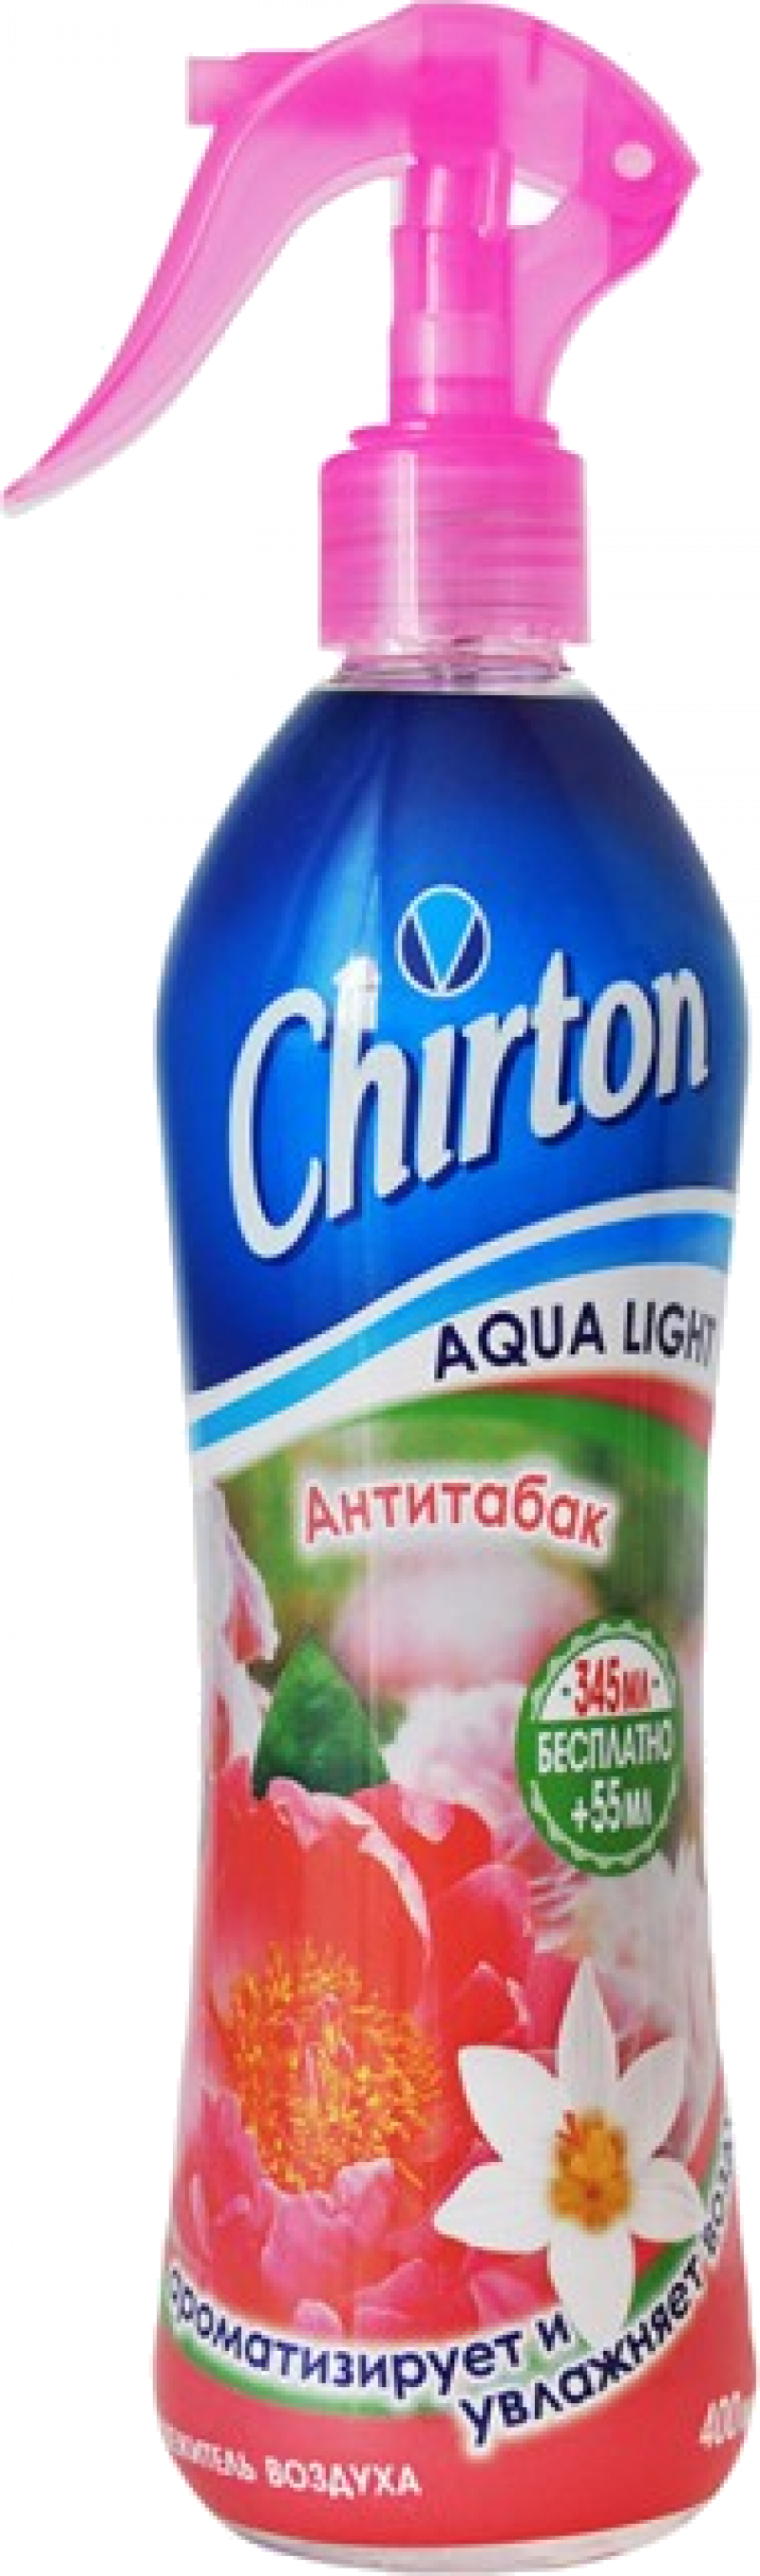 Освежитель воздуха ТМ Chirton Aqua Light анти табак 400мл